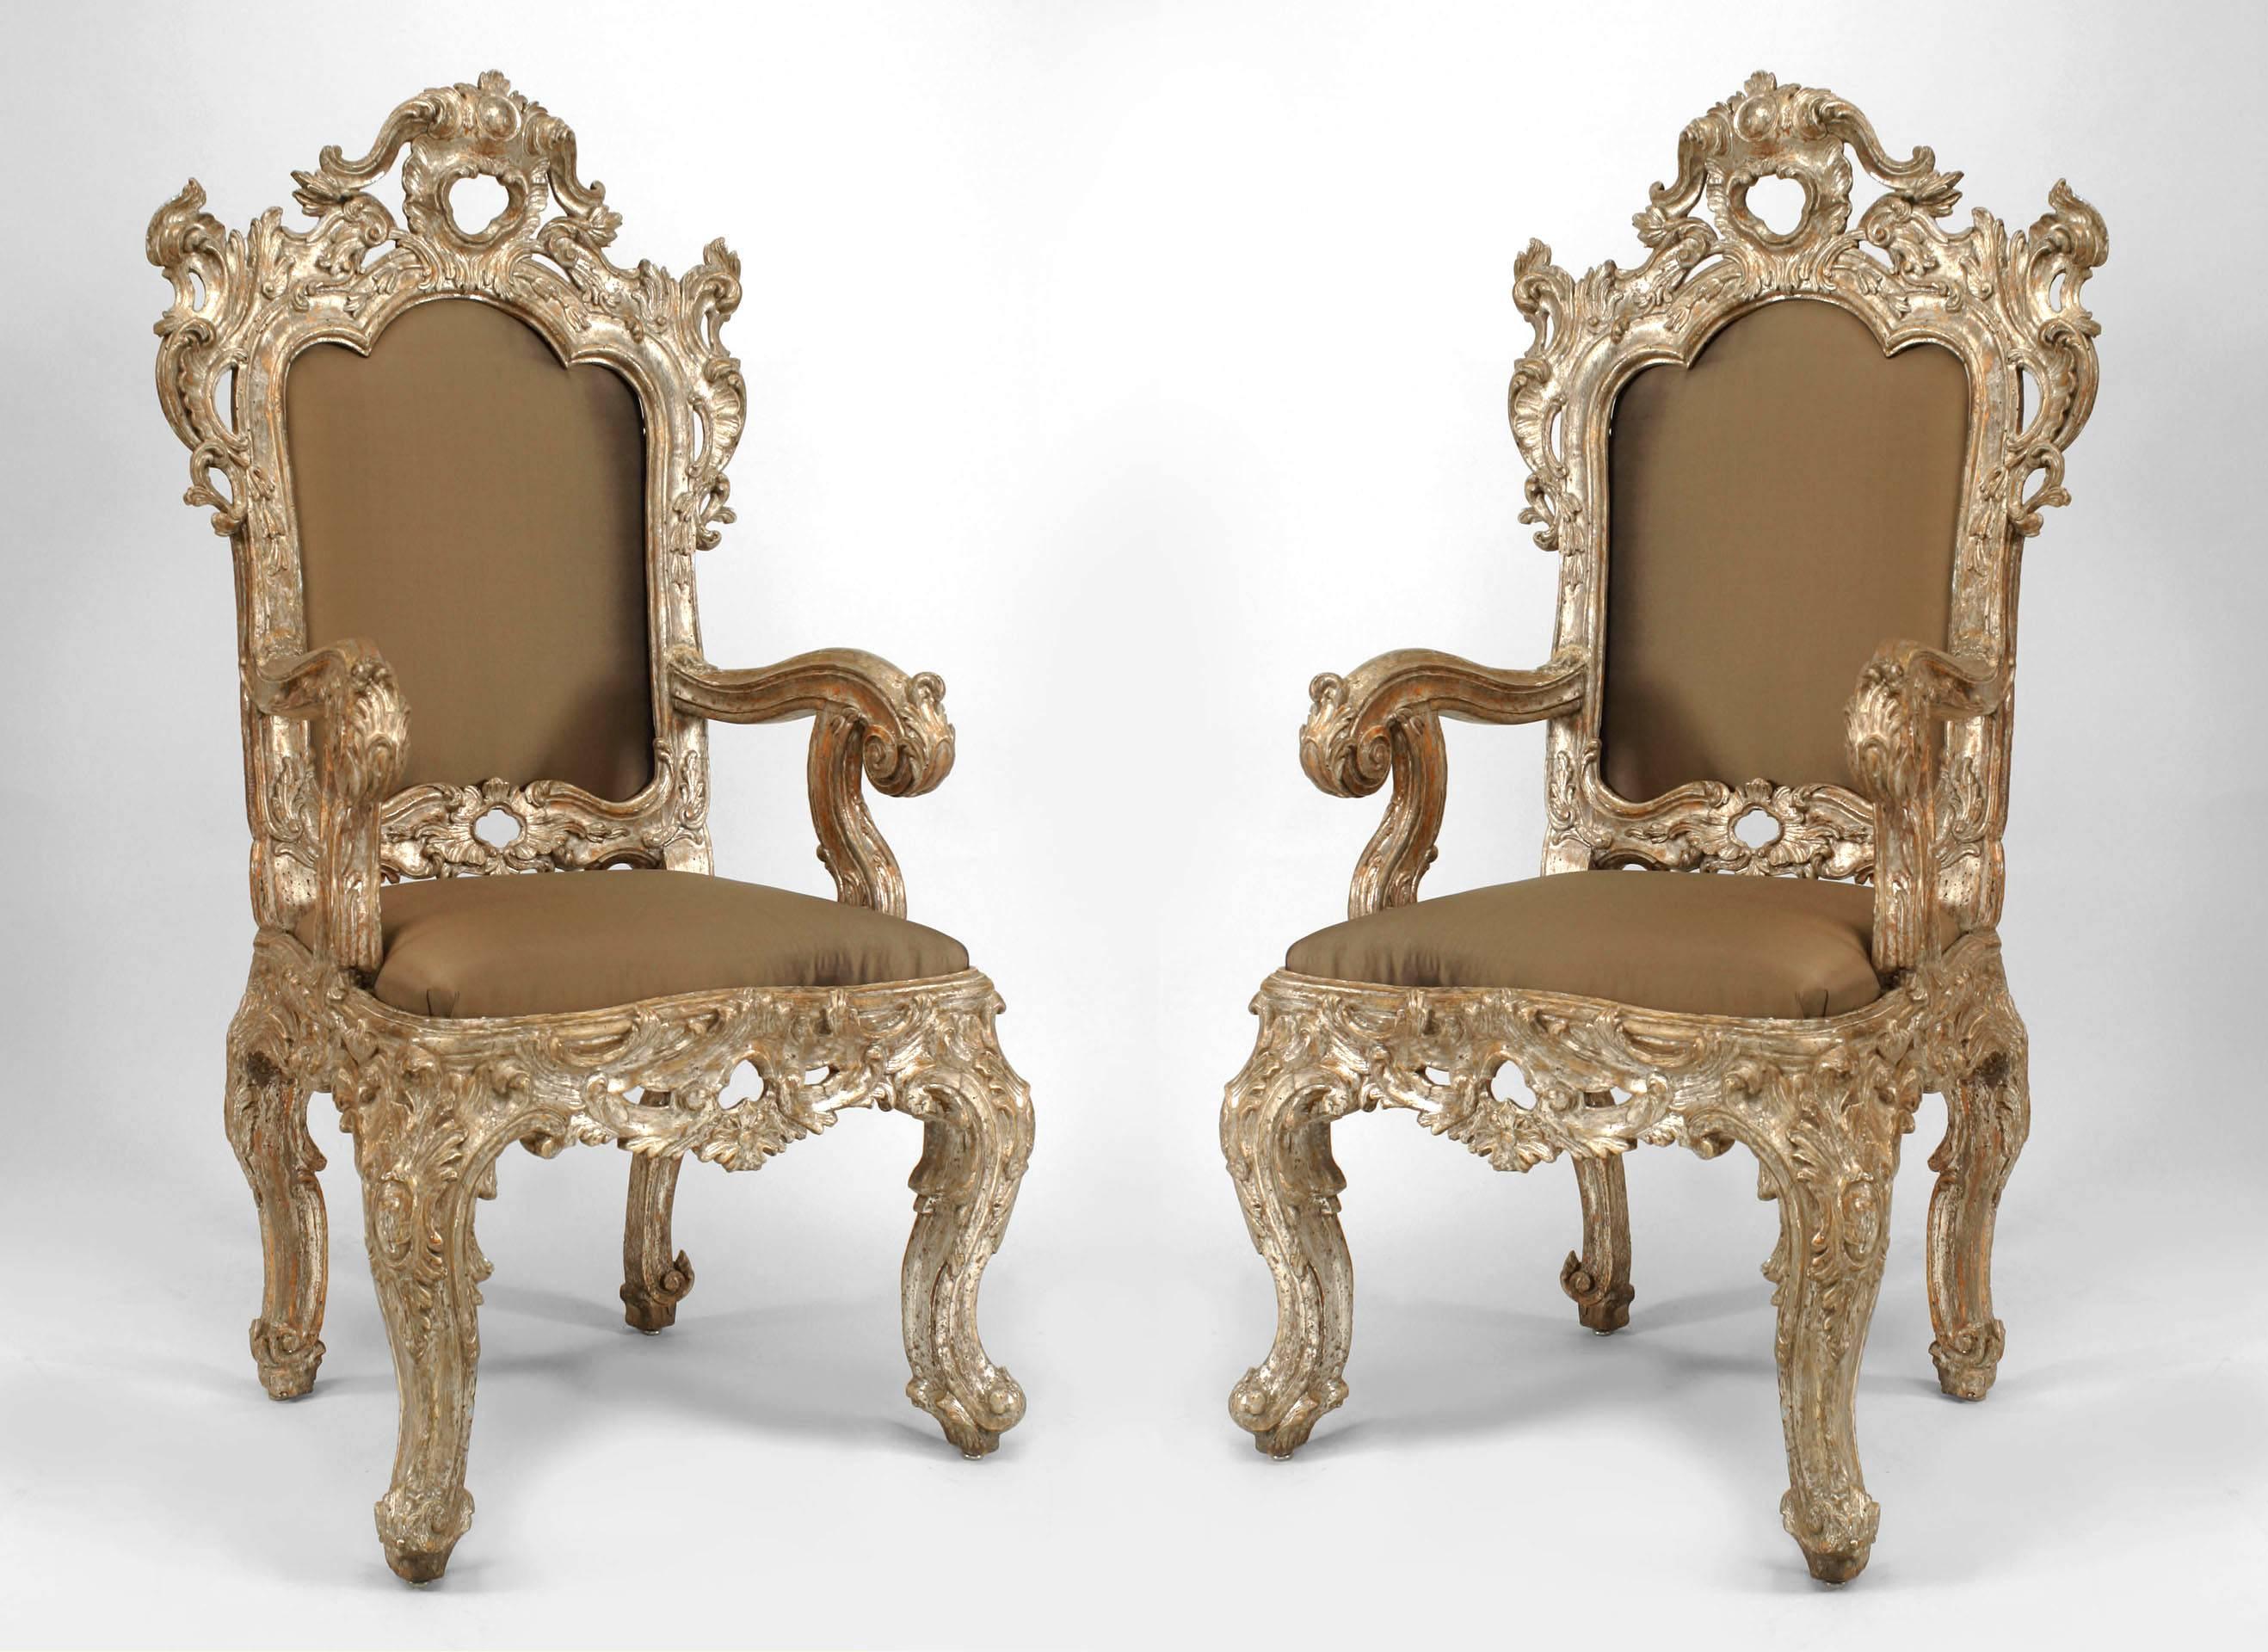 Paire d'anciens fauteuils Rococo italiens à haut dossier de style trône, sculptés en argent doré, avec assise et dossier tapissés de beige (1 similaire-Inv. #037738A)
